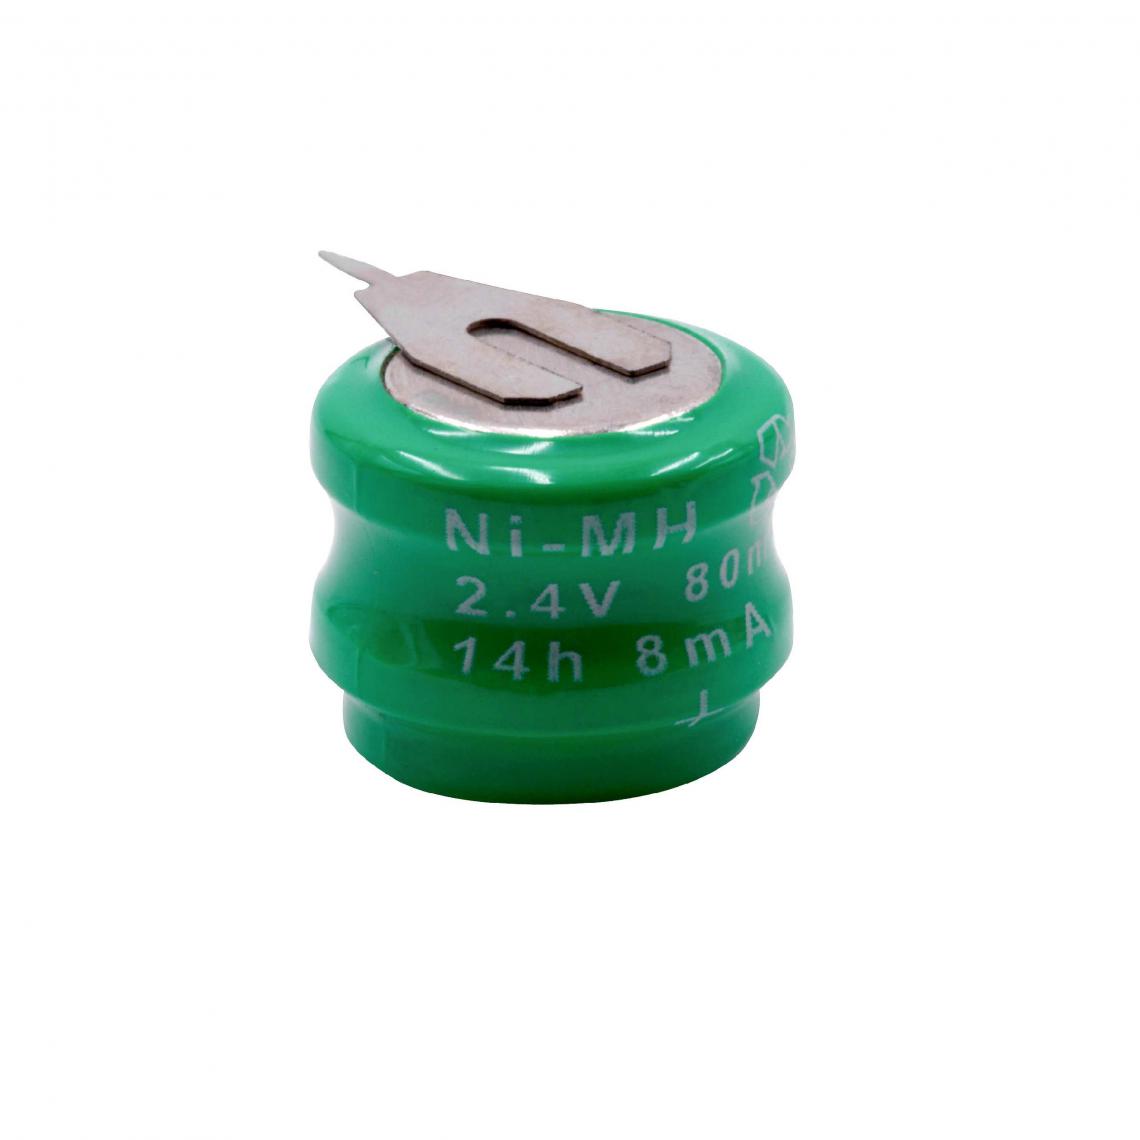 Vhbw - vhbw NiMH pile bouton de remplacement (2x cellule) 2 épingles type V80H 80mAh 2.4V convient pour les batteries de modélisme etc. - Autre appareil de mesure